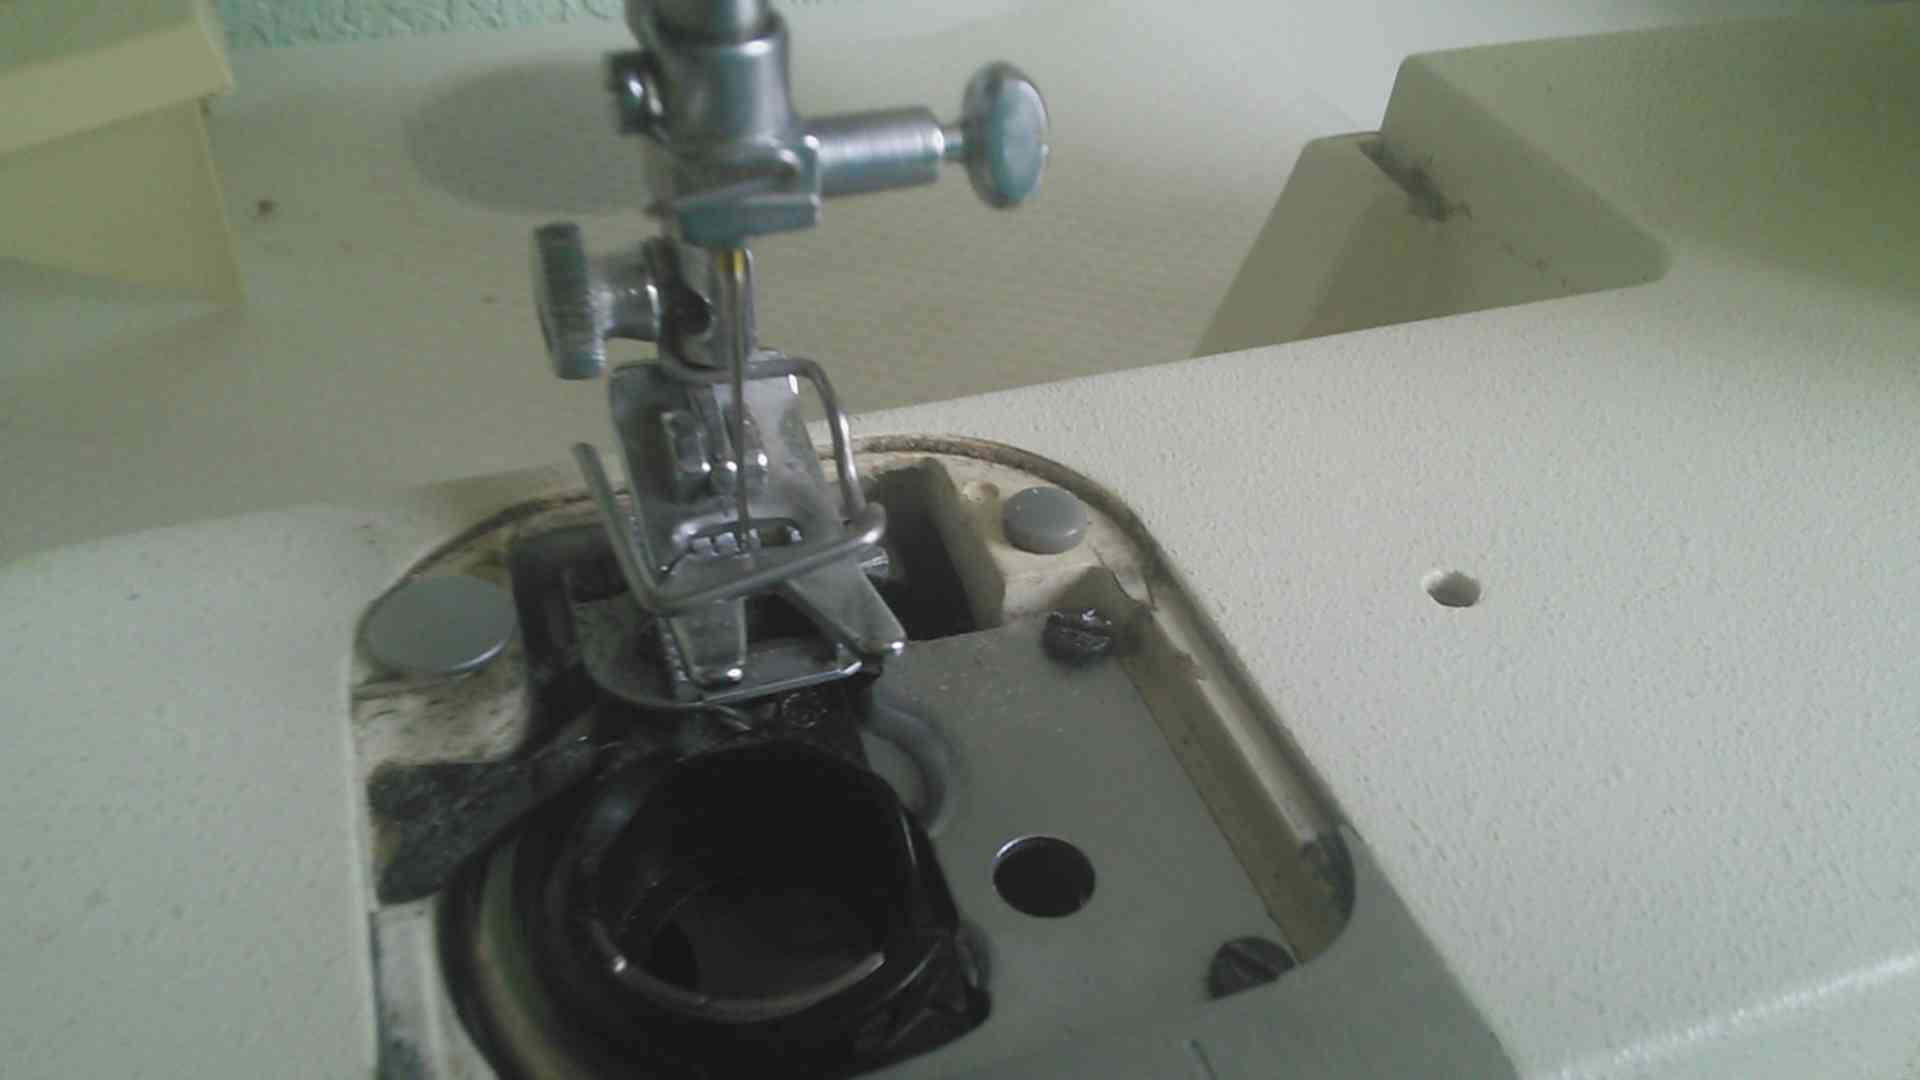 Сломалась швейная машинка. Починить швейную машинку. Швейная машинка сломалась. Наладка швейных машин. Как отремонтировать швейную машинку.